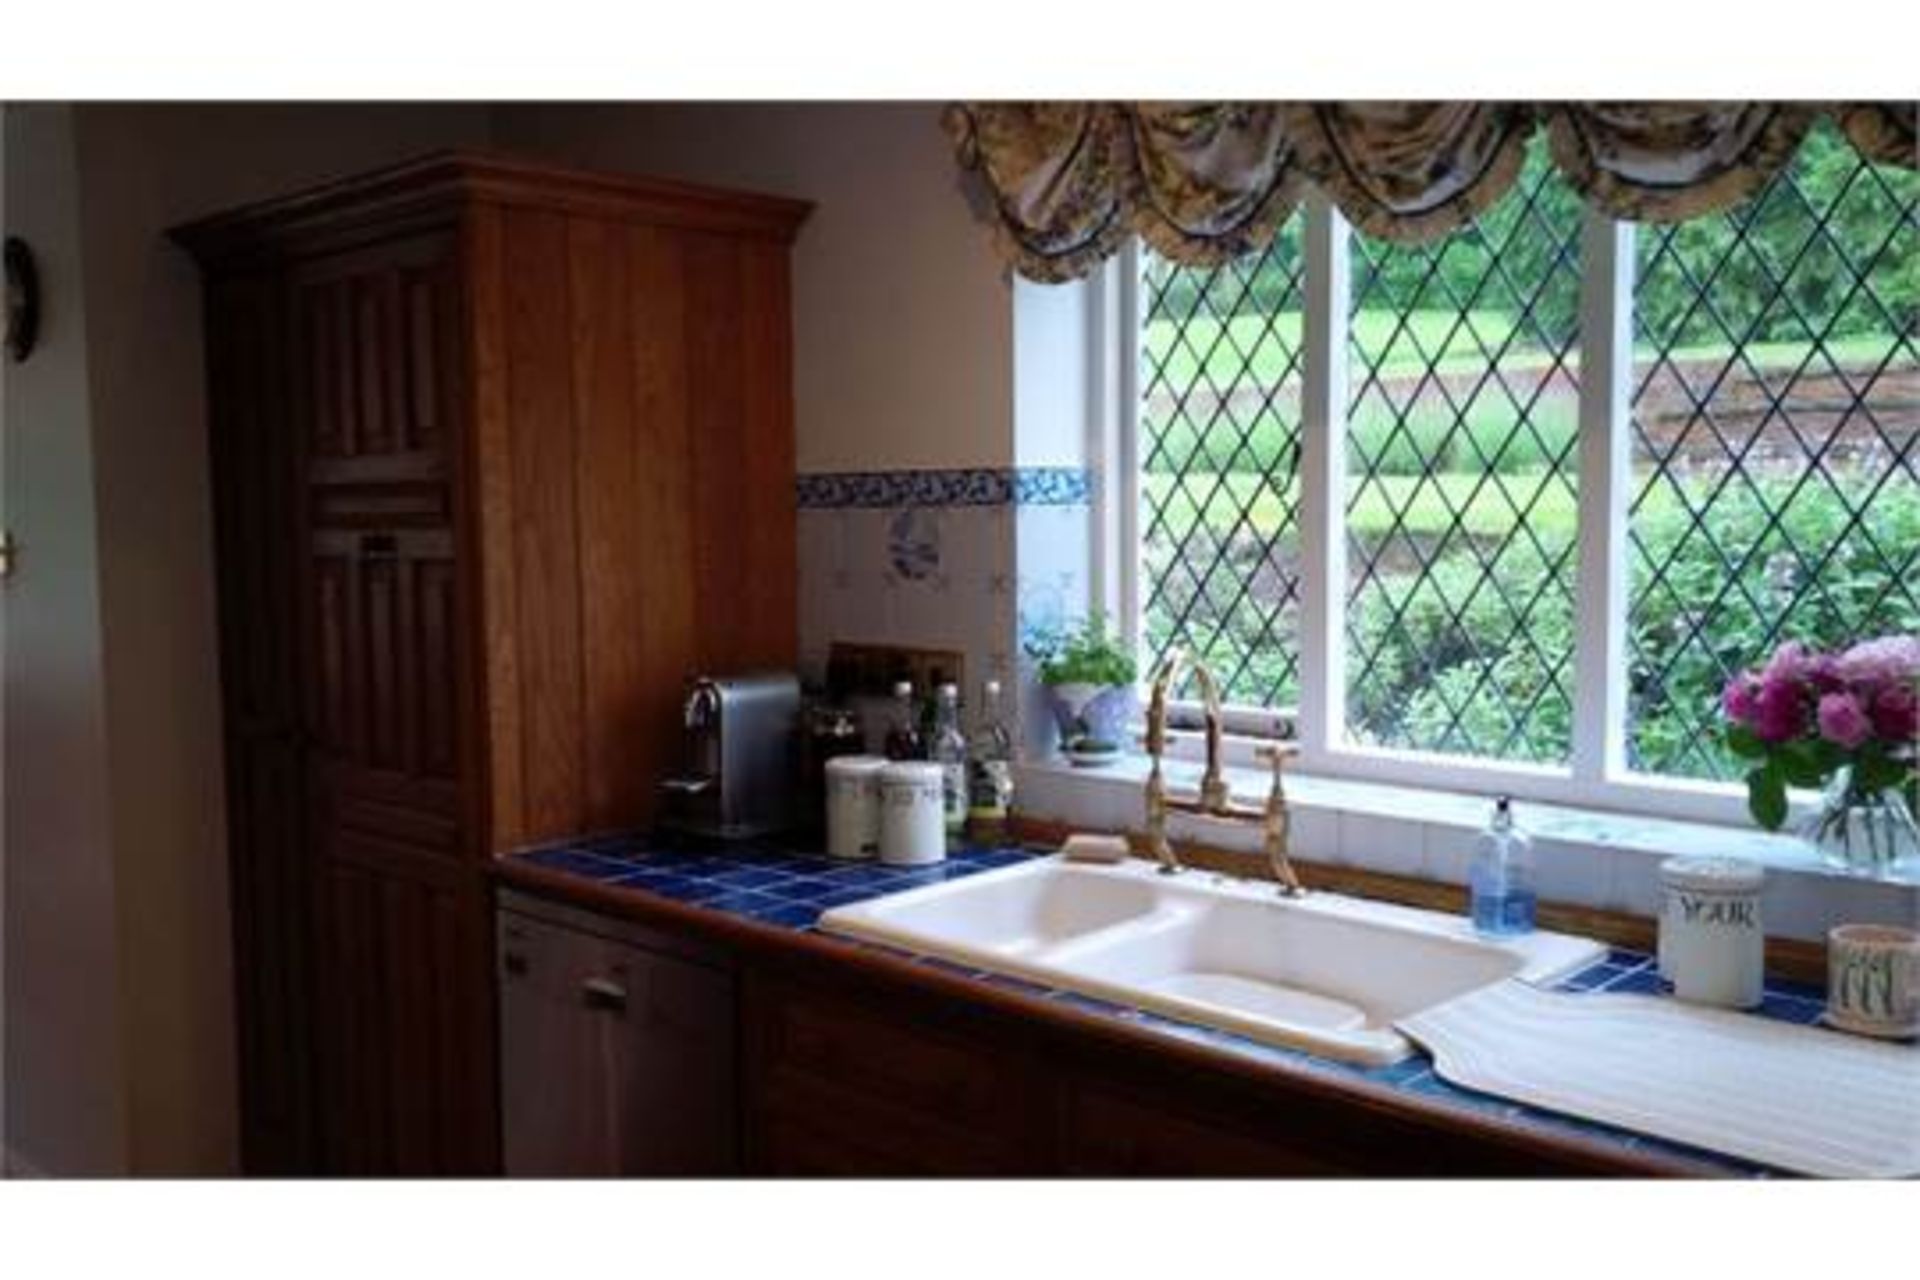 Luxury Used Smallbone English Oak Kitchen and Appliances - Image 6 of 11